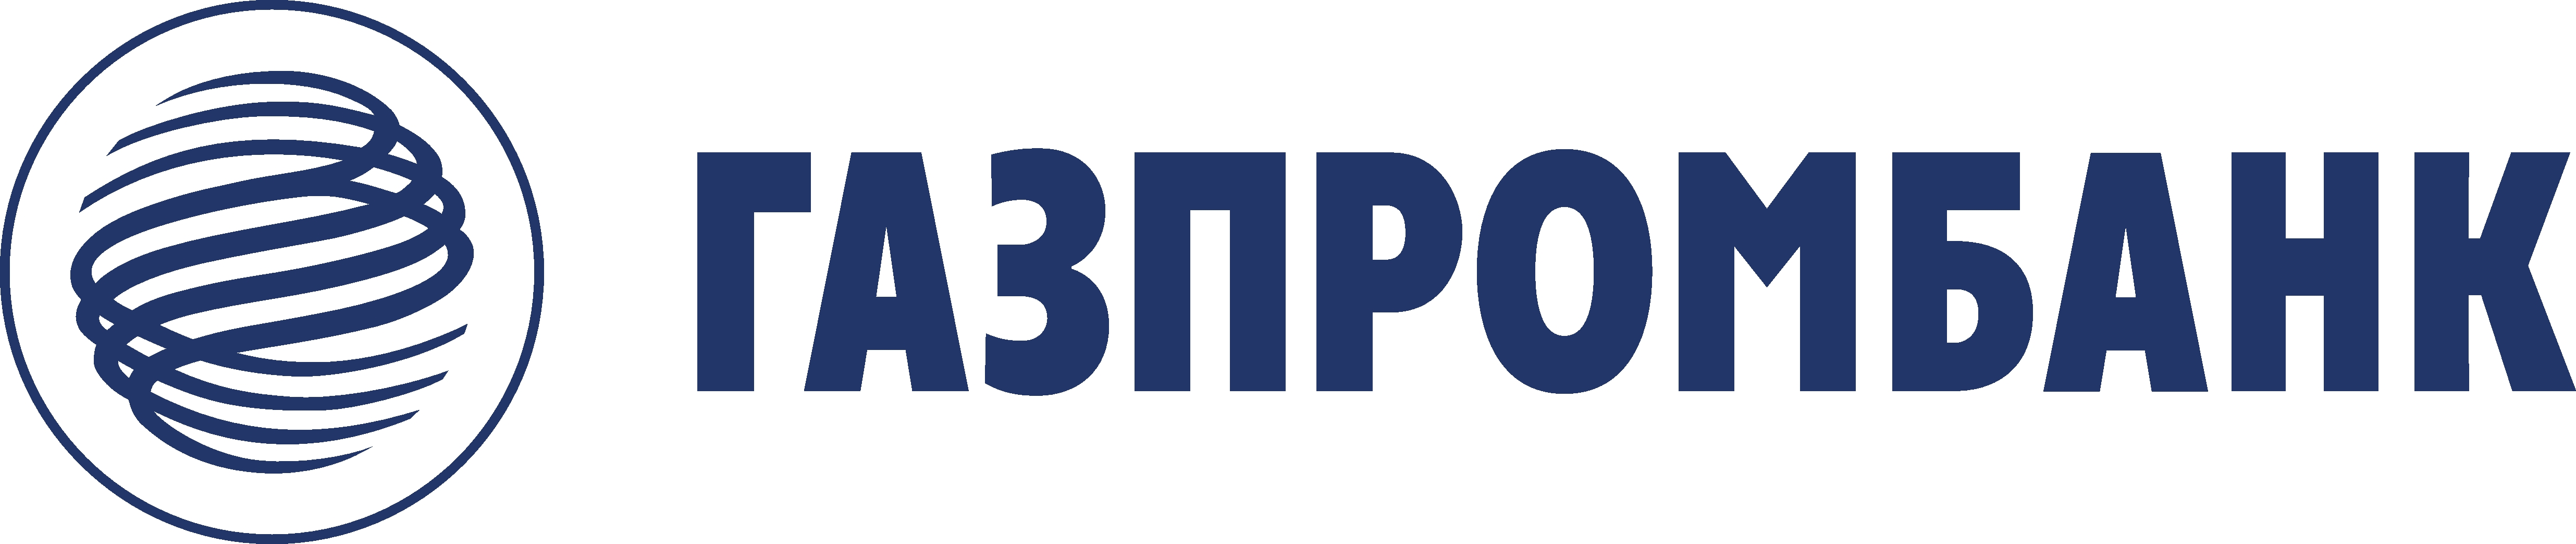 Представители ведущих горнодобывающих компаний России примут участие в традиционной конференции Уралмашзавода и Газпромбанка - «Газпромбанк»